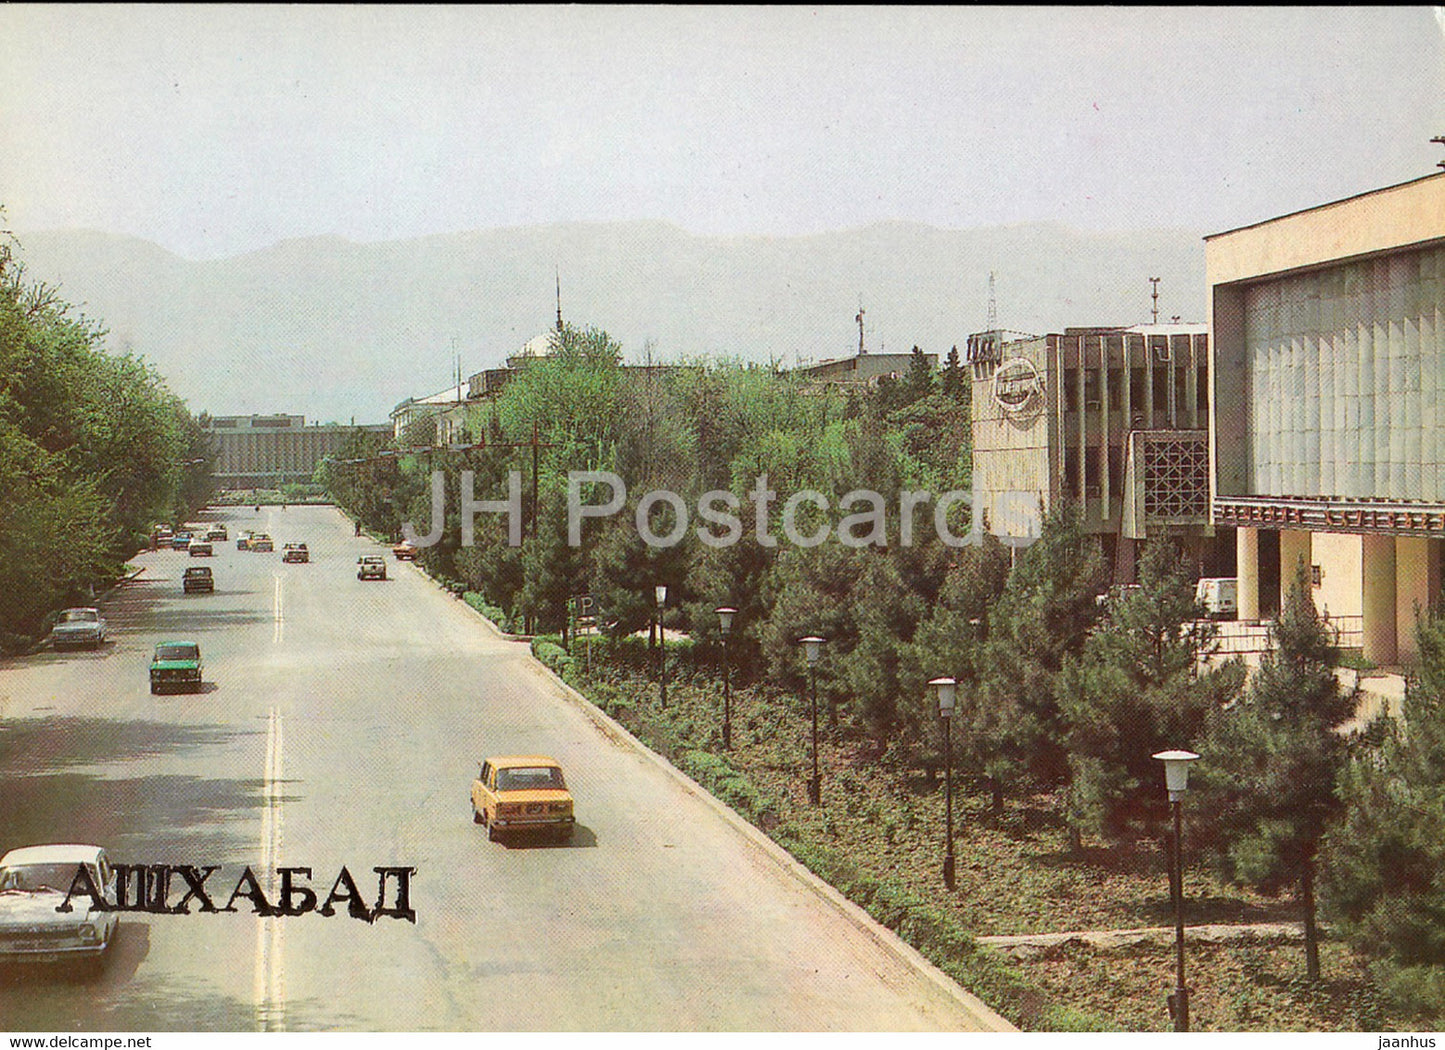 Ashgabat - Ashkhabad - Gogol street - car Zhiguli Volga - 1984 - Turkmenistan USSR - unused - JH Postcards